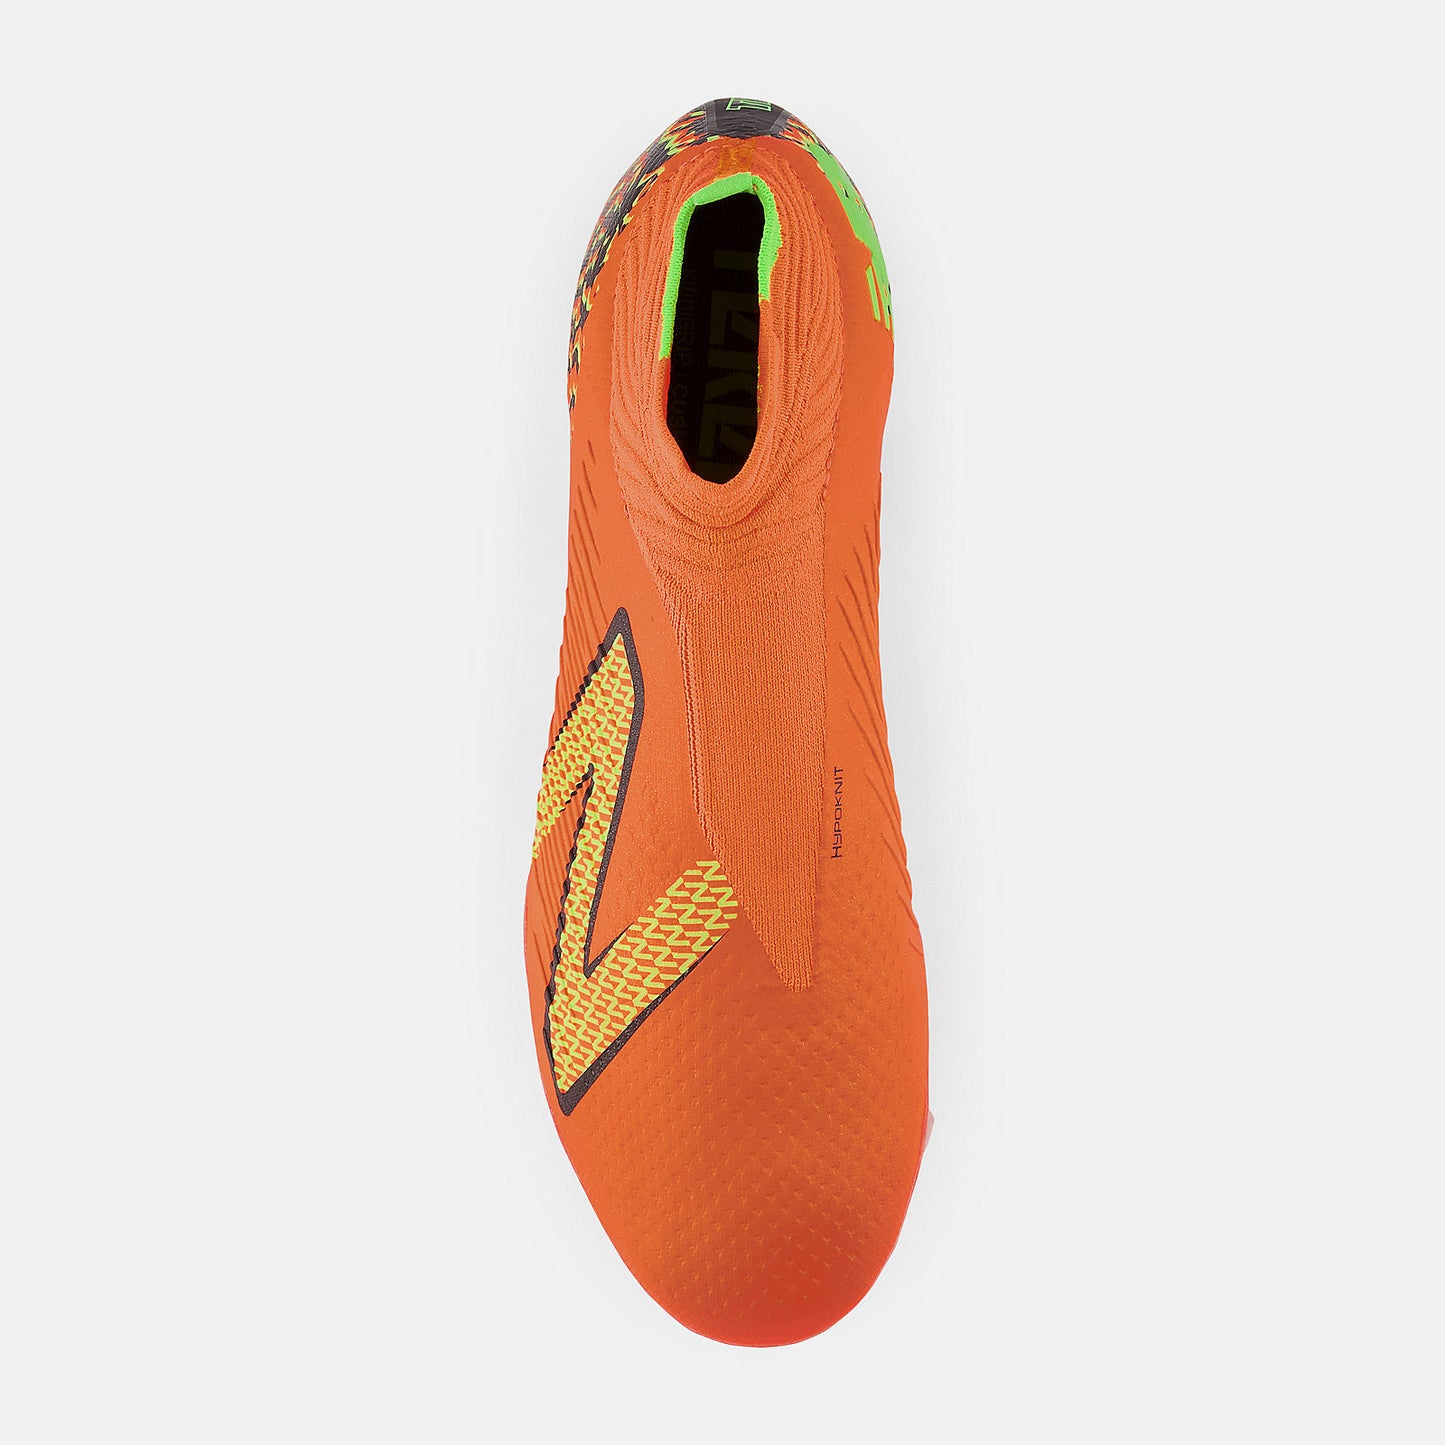 New Balance Tekela v4 Pro FG Soccer Cleats Orange